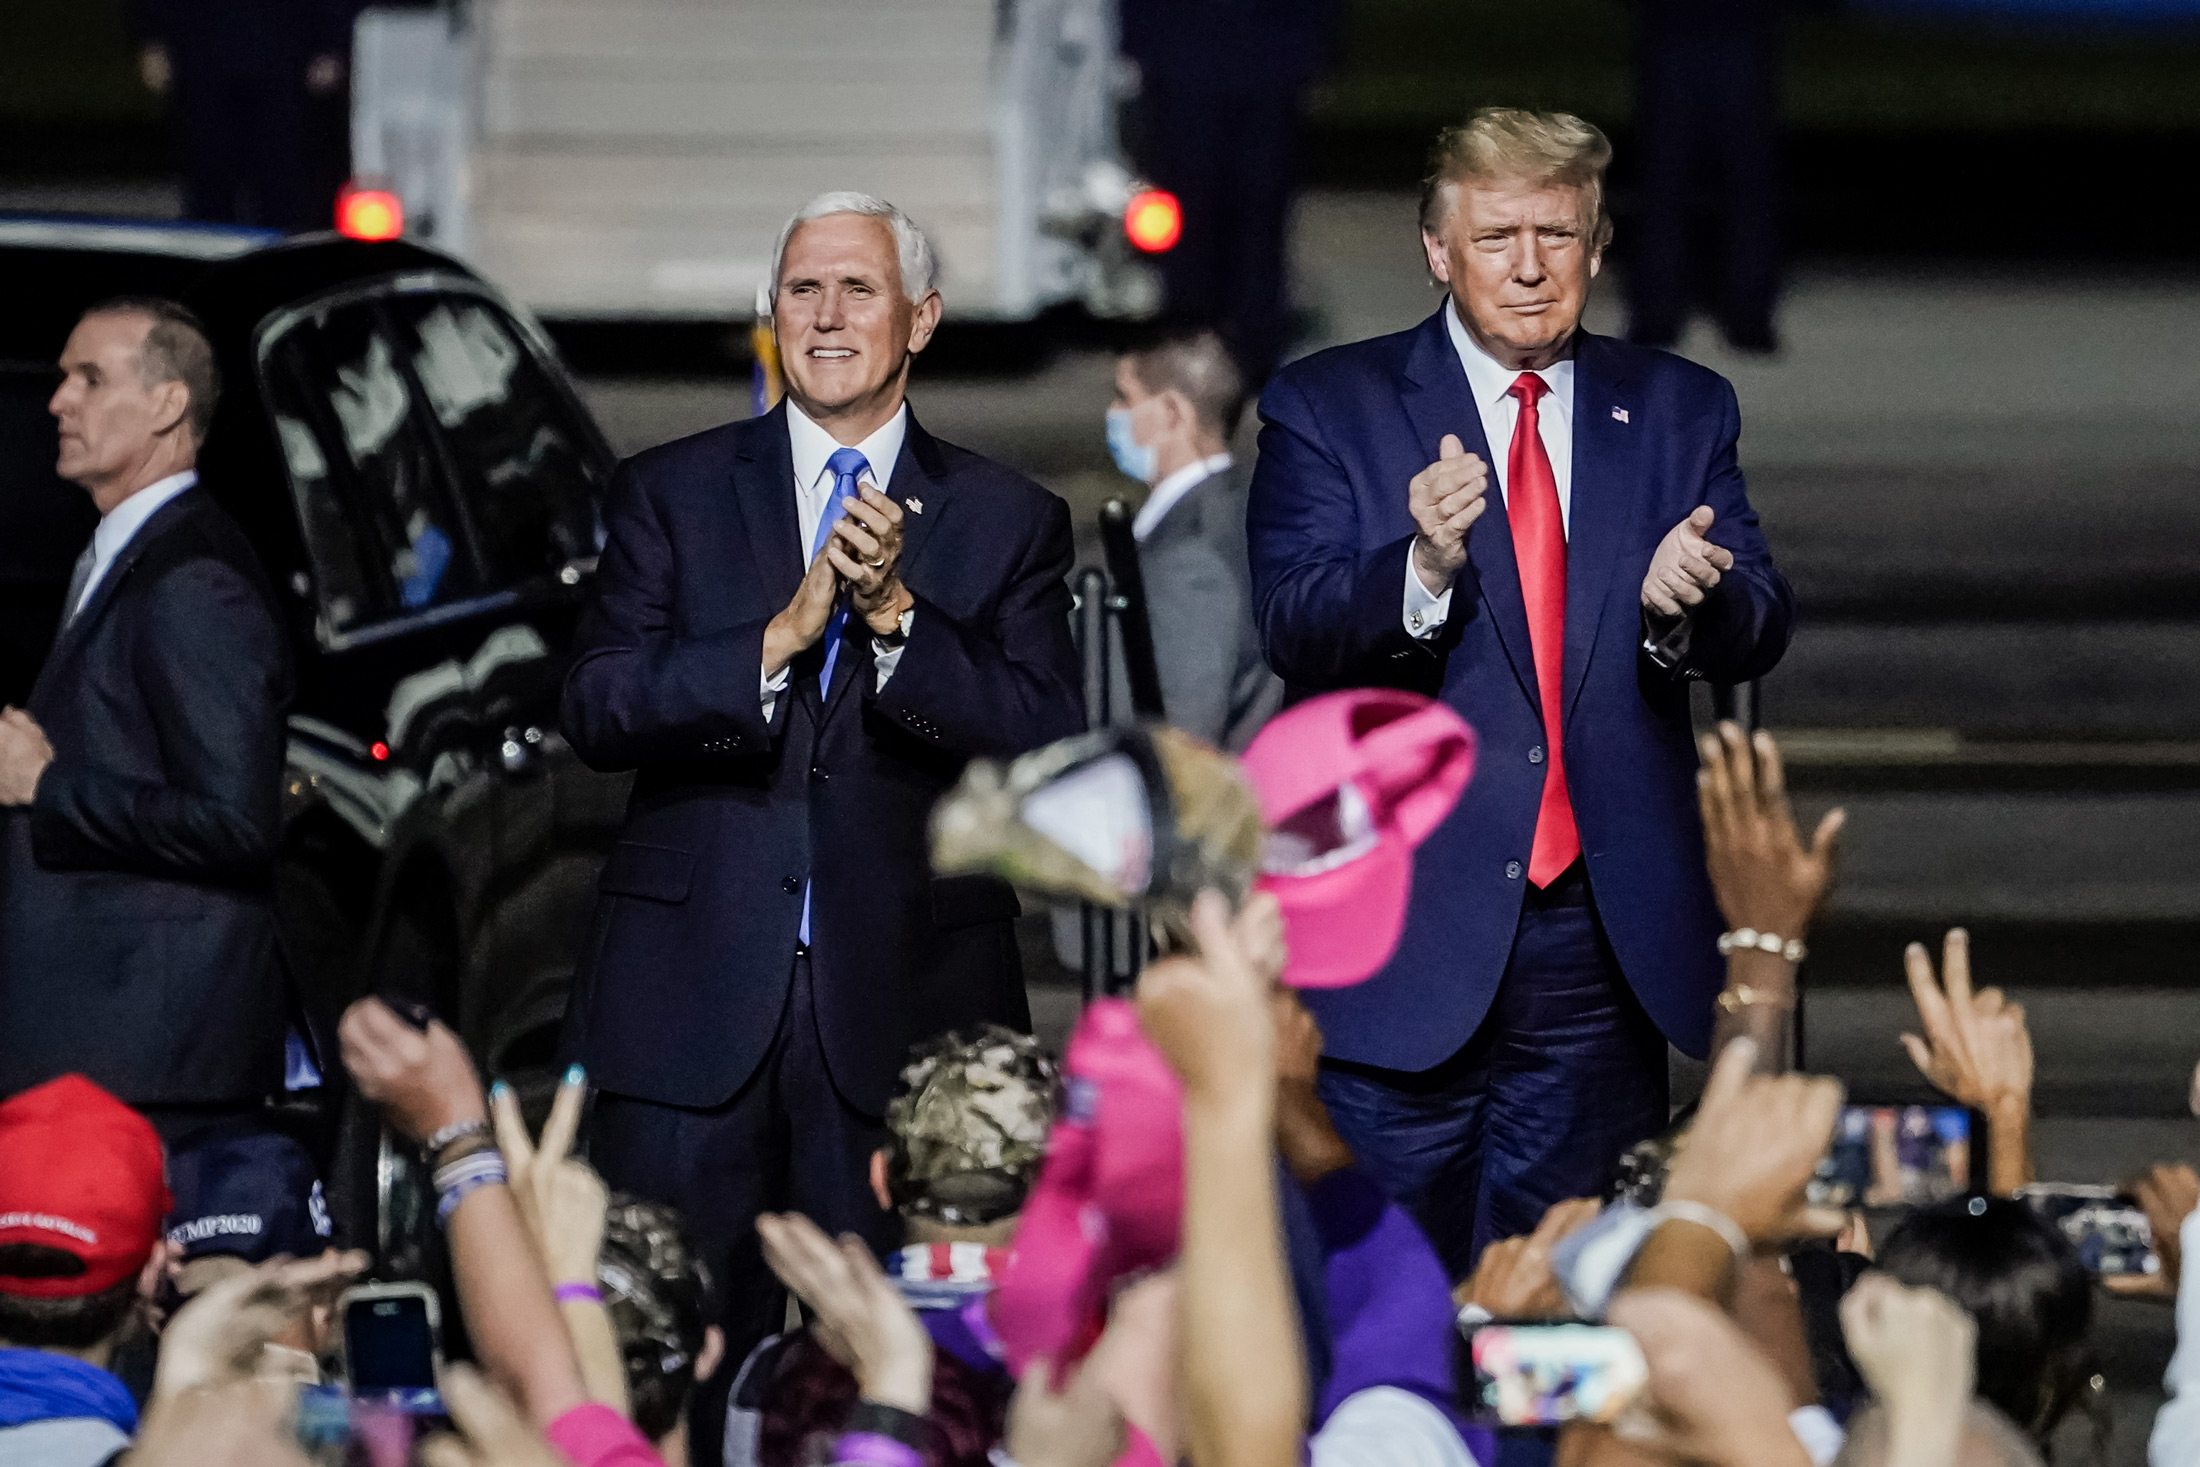 Tổng thống Donald Trump và Phó Tổng thống Mike Pence đến tham dự một cuộc vận động tranh cử tại Phi trường Quốc tế Newport News/Williamsburg ở Newport News, Virginia, vào ngày 25/09/2020. (Ảnh: Drew Angerer/Getty Images)